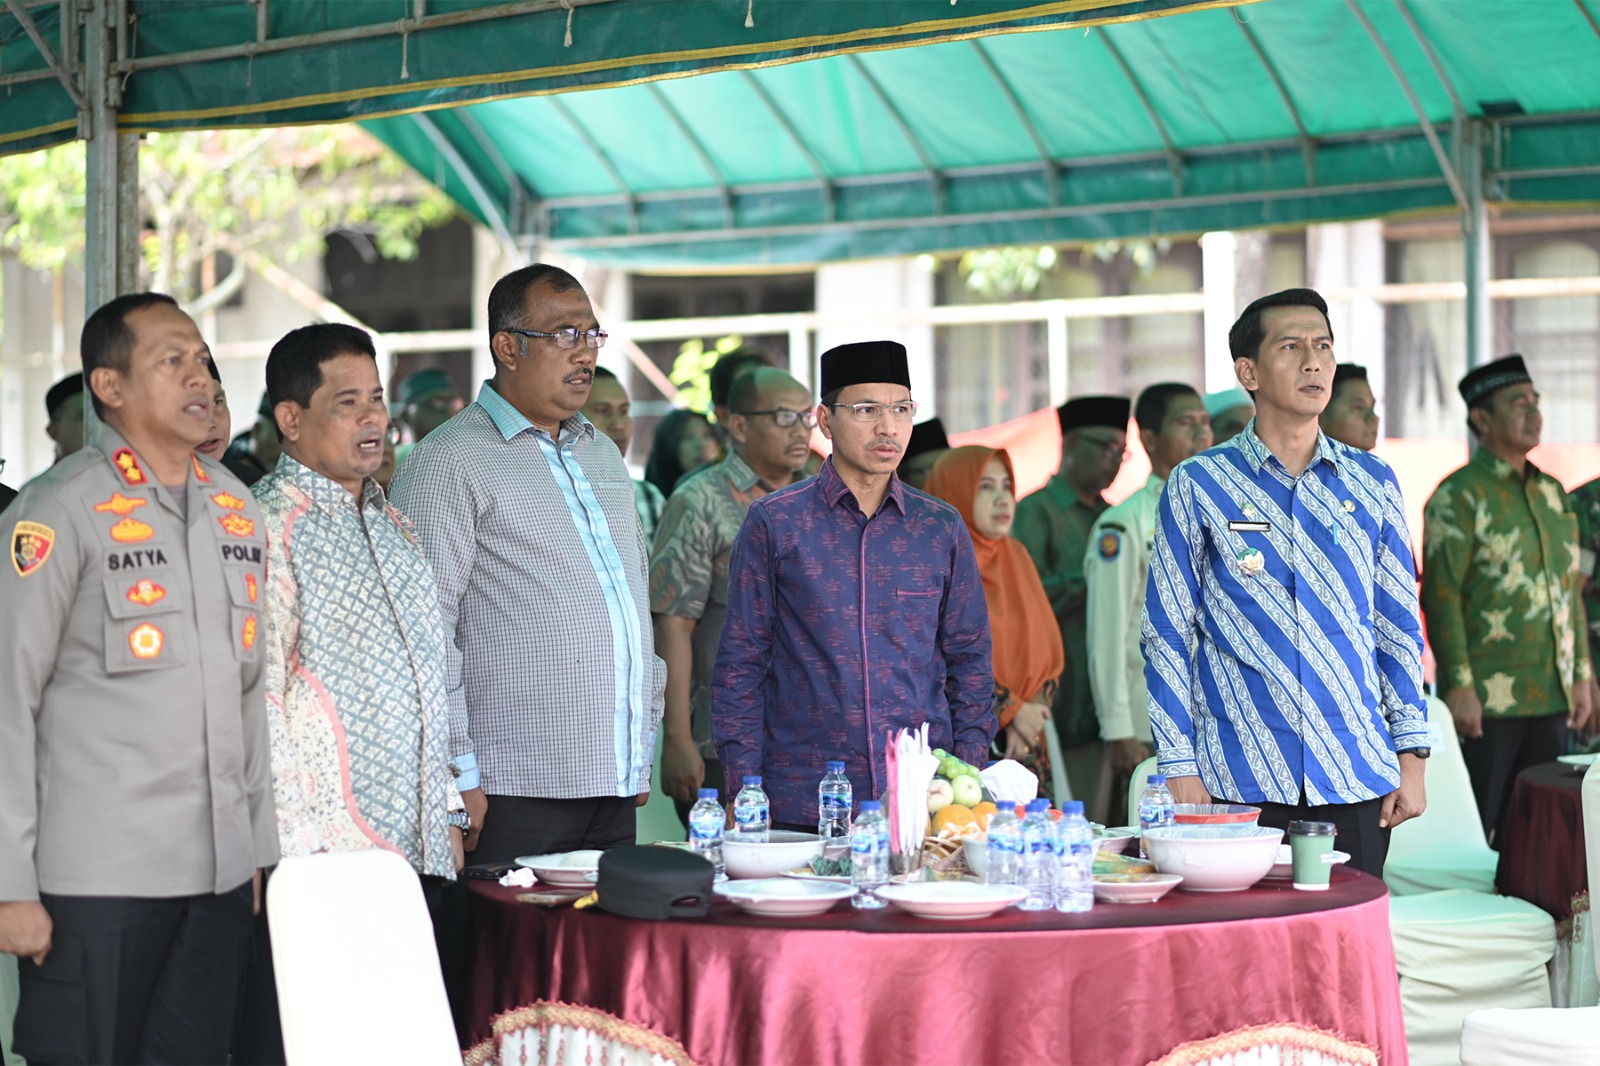 Hadiri Pengukuhan Asotalam, Ini Harapan Ketua DPRK Banda Aceh